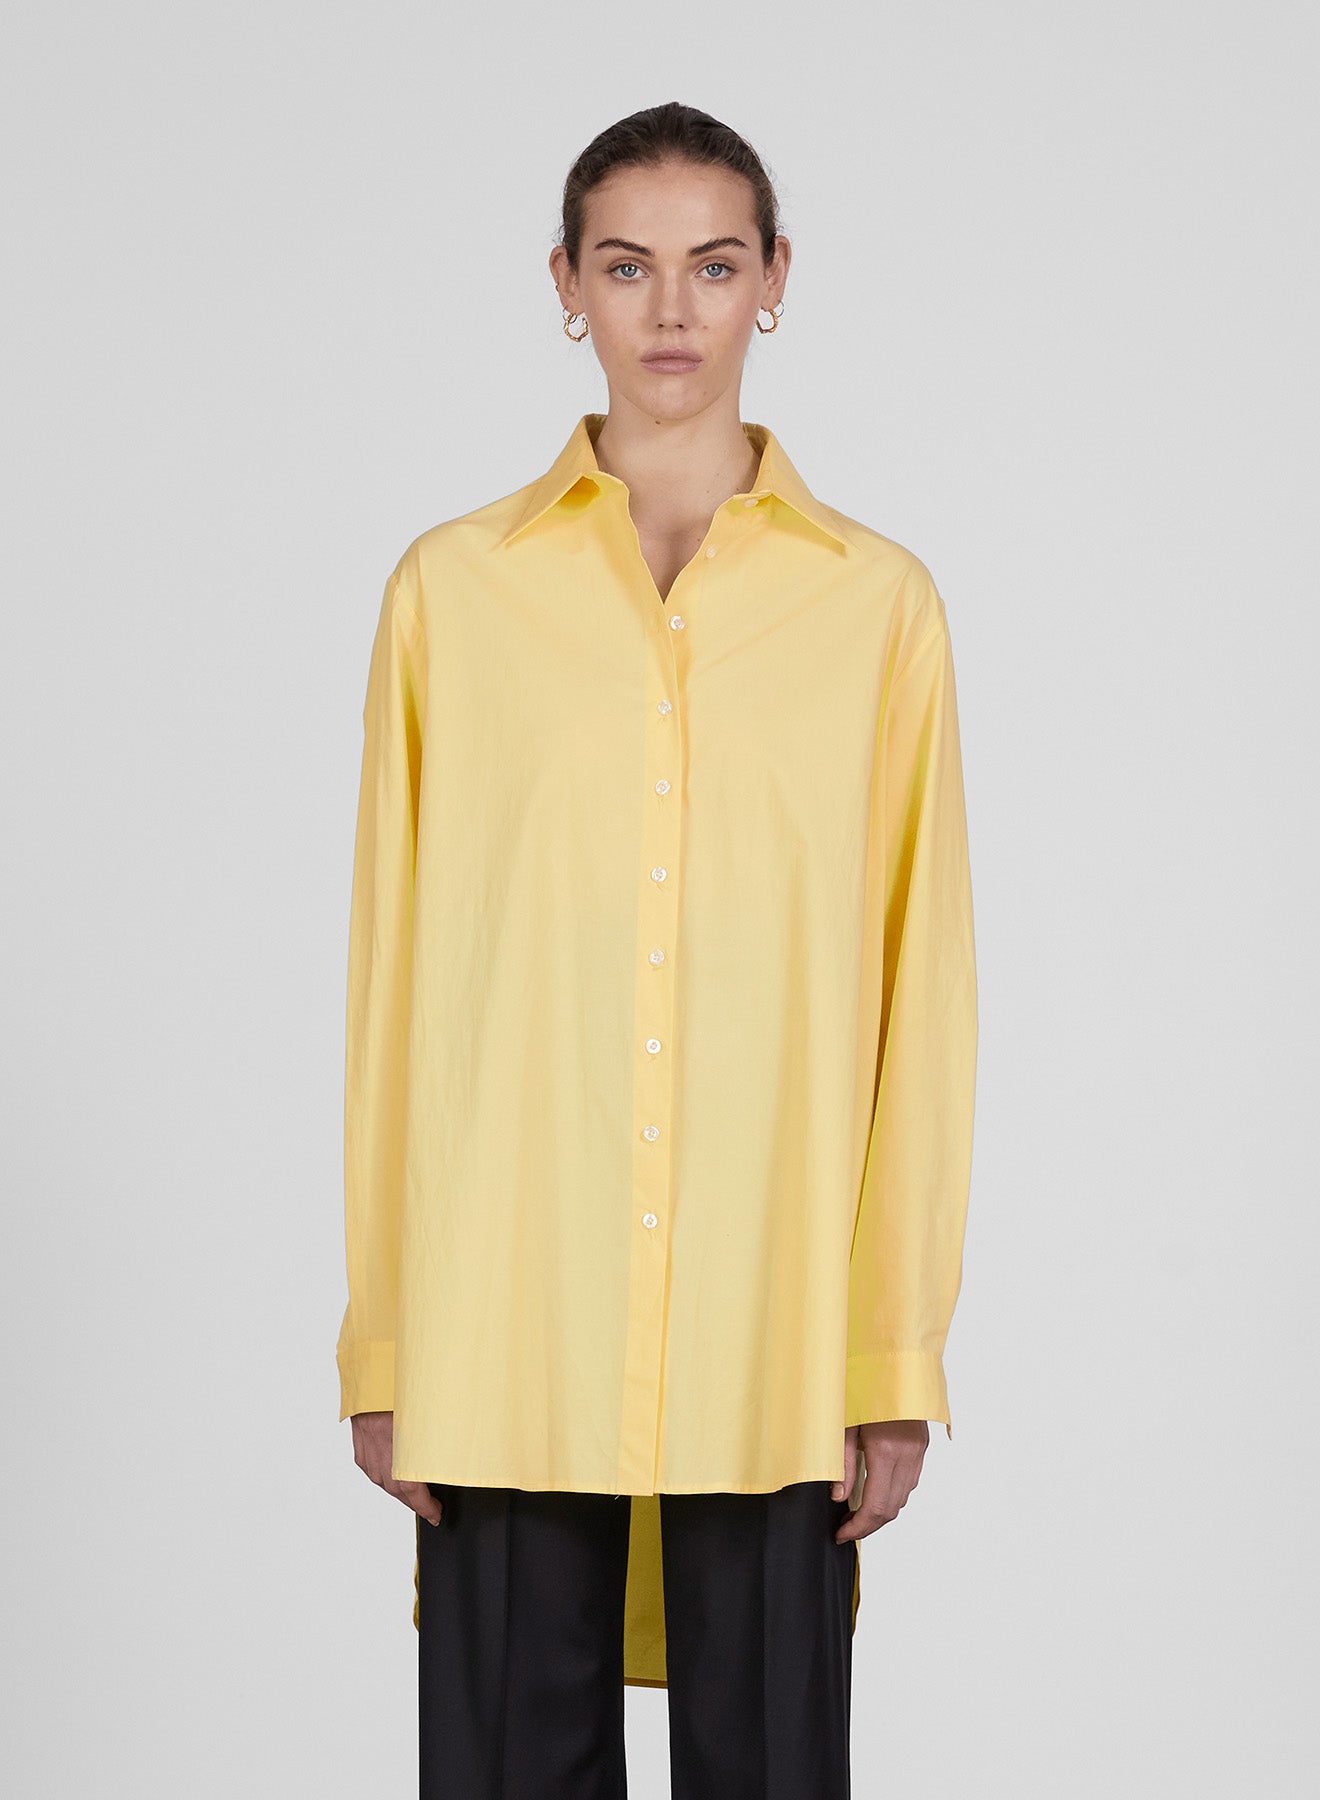 非対面販売 Annaquan shirt 高級素材 高級シャツ | milaap.co.uk